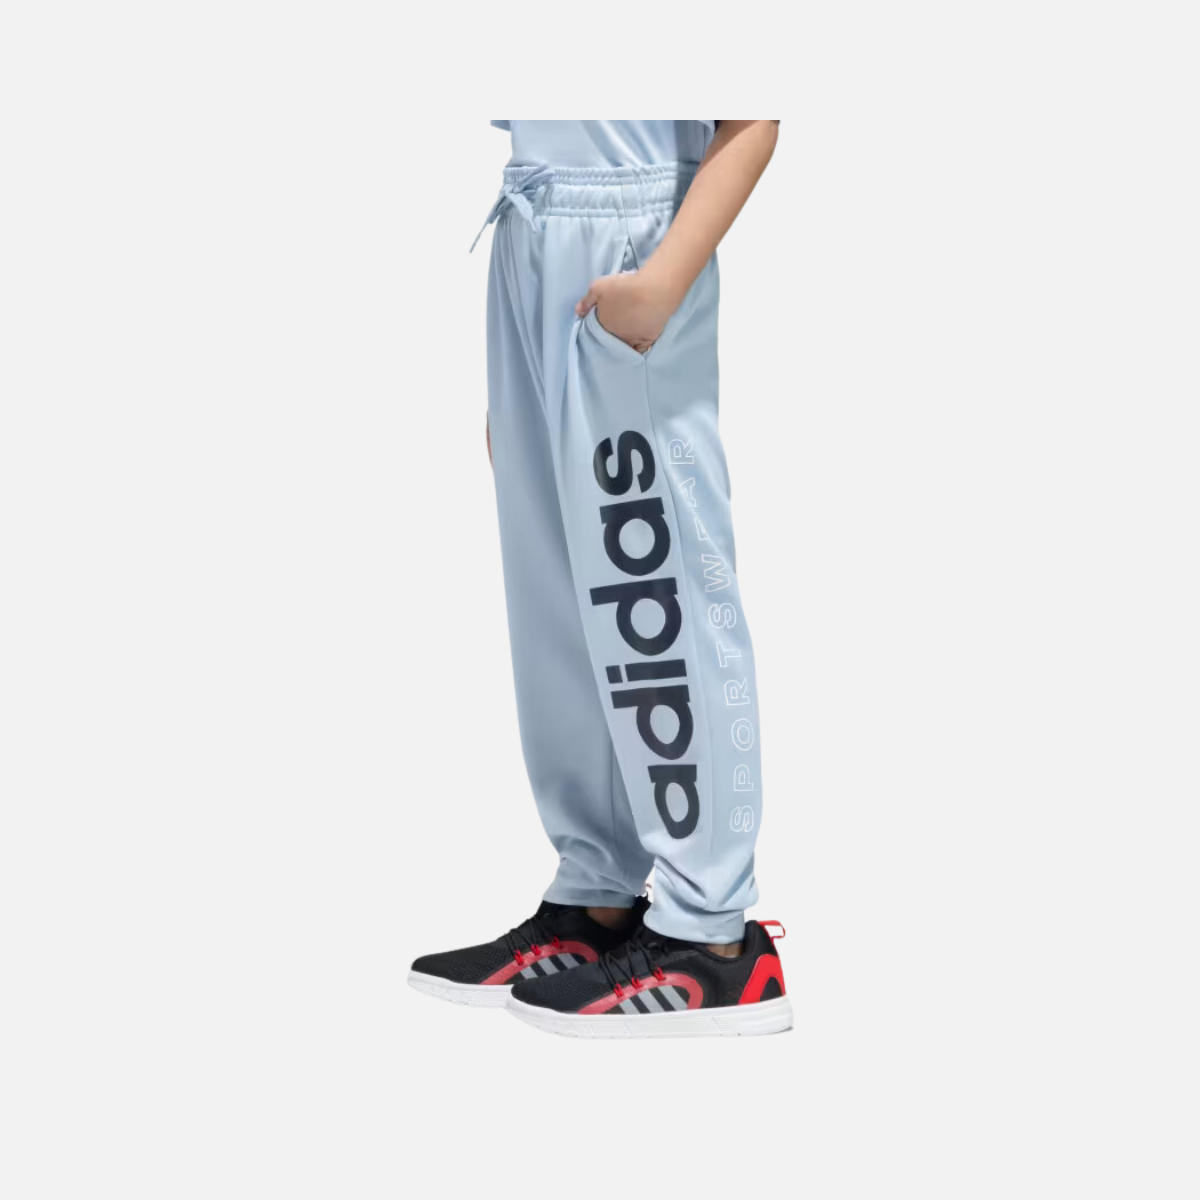 Adidas Kids Boy Graphic Pant (7-16 Years)-Wonder Blue